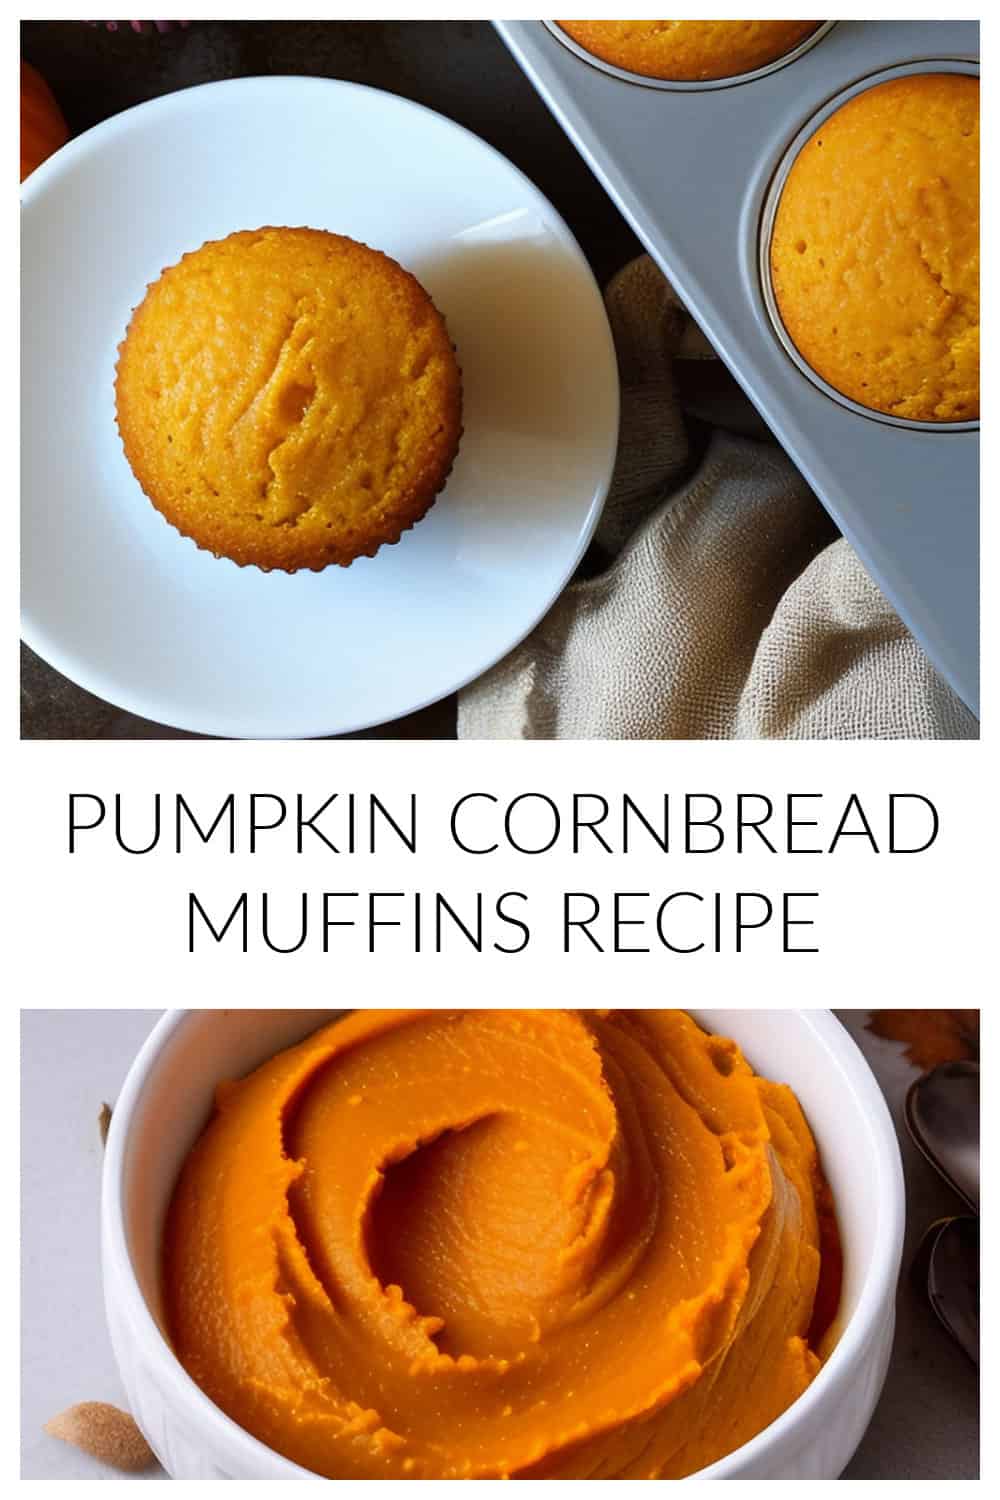 Pumpkin Cornbread Muffin Recipe